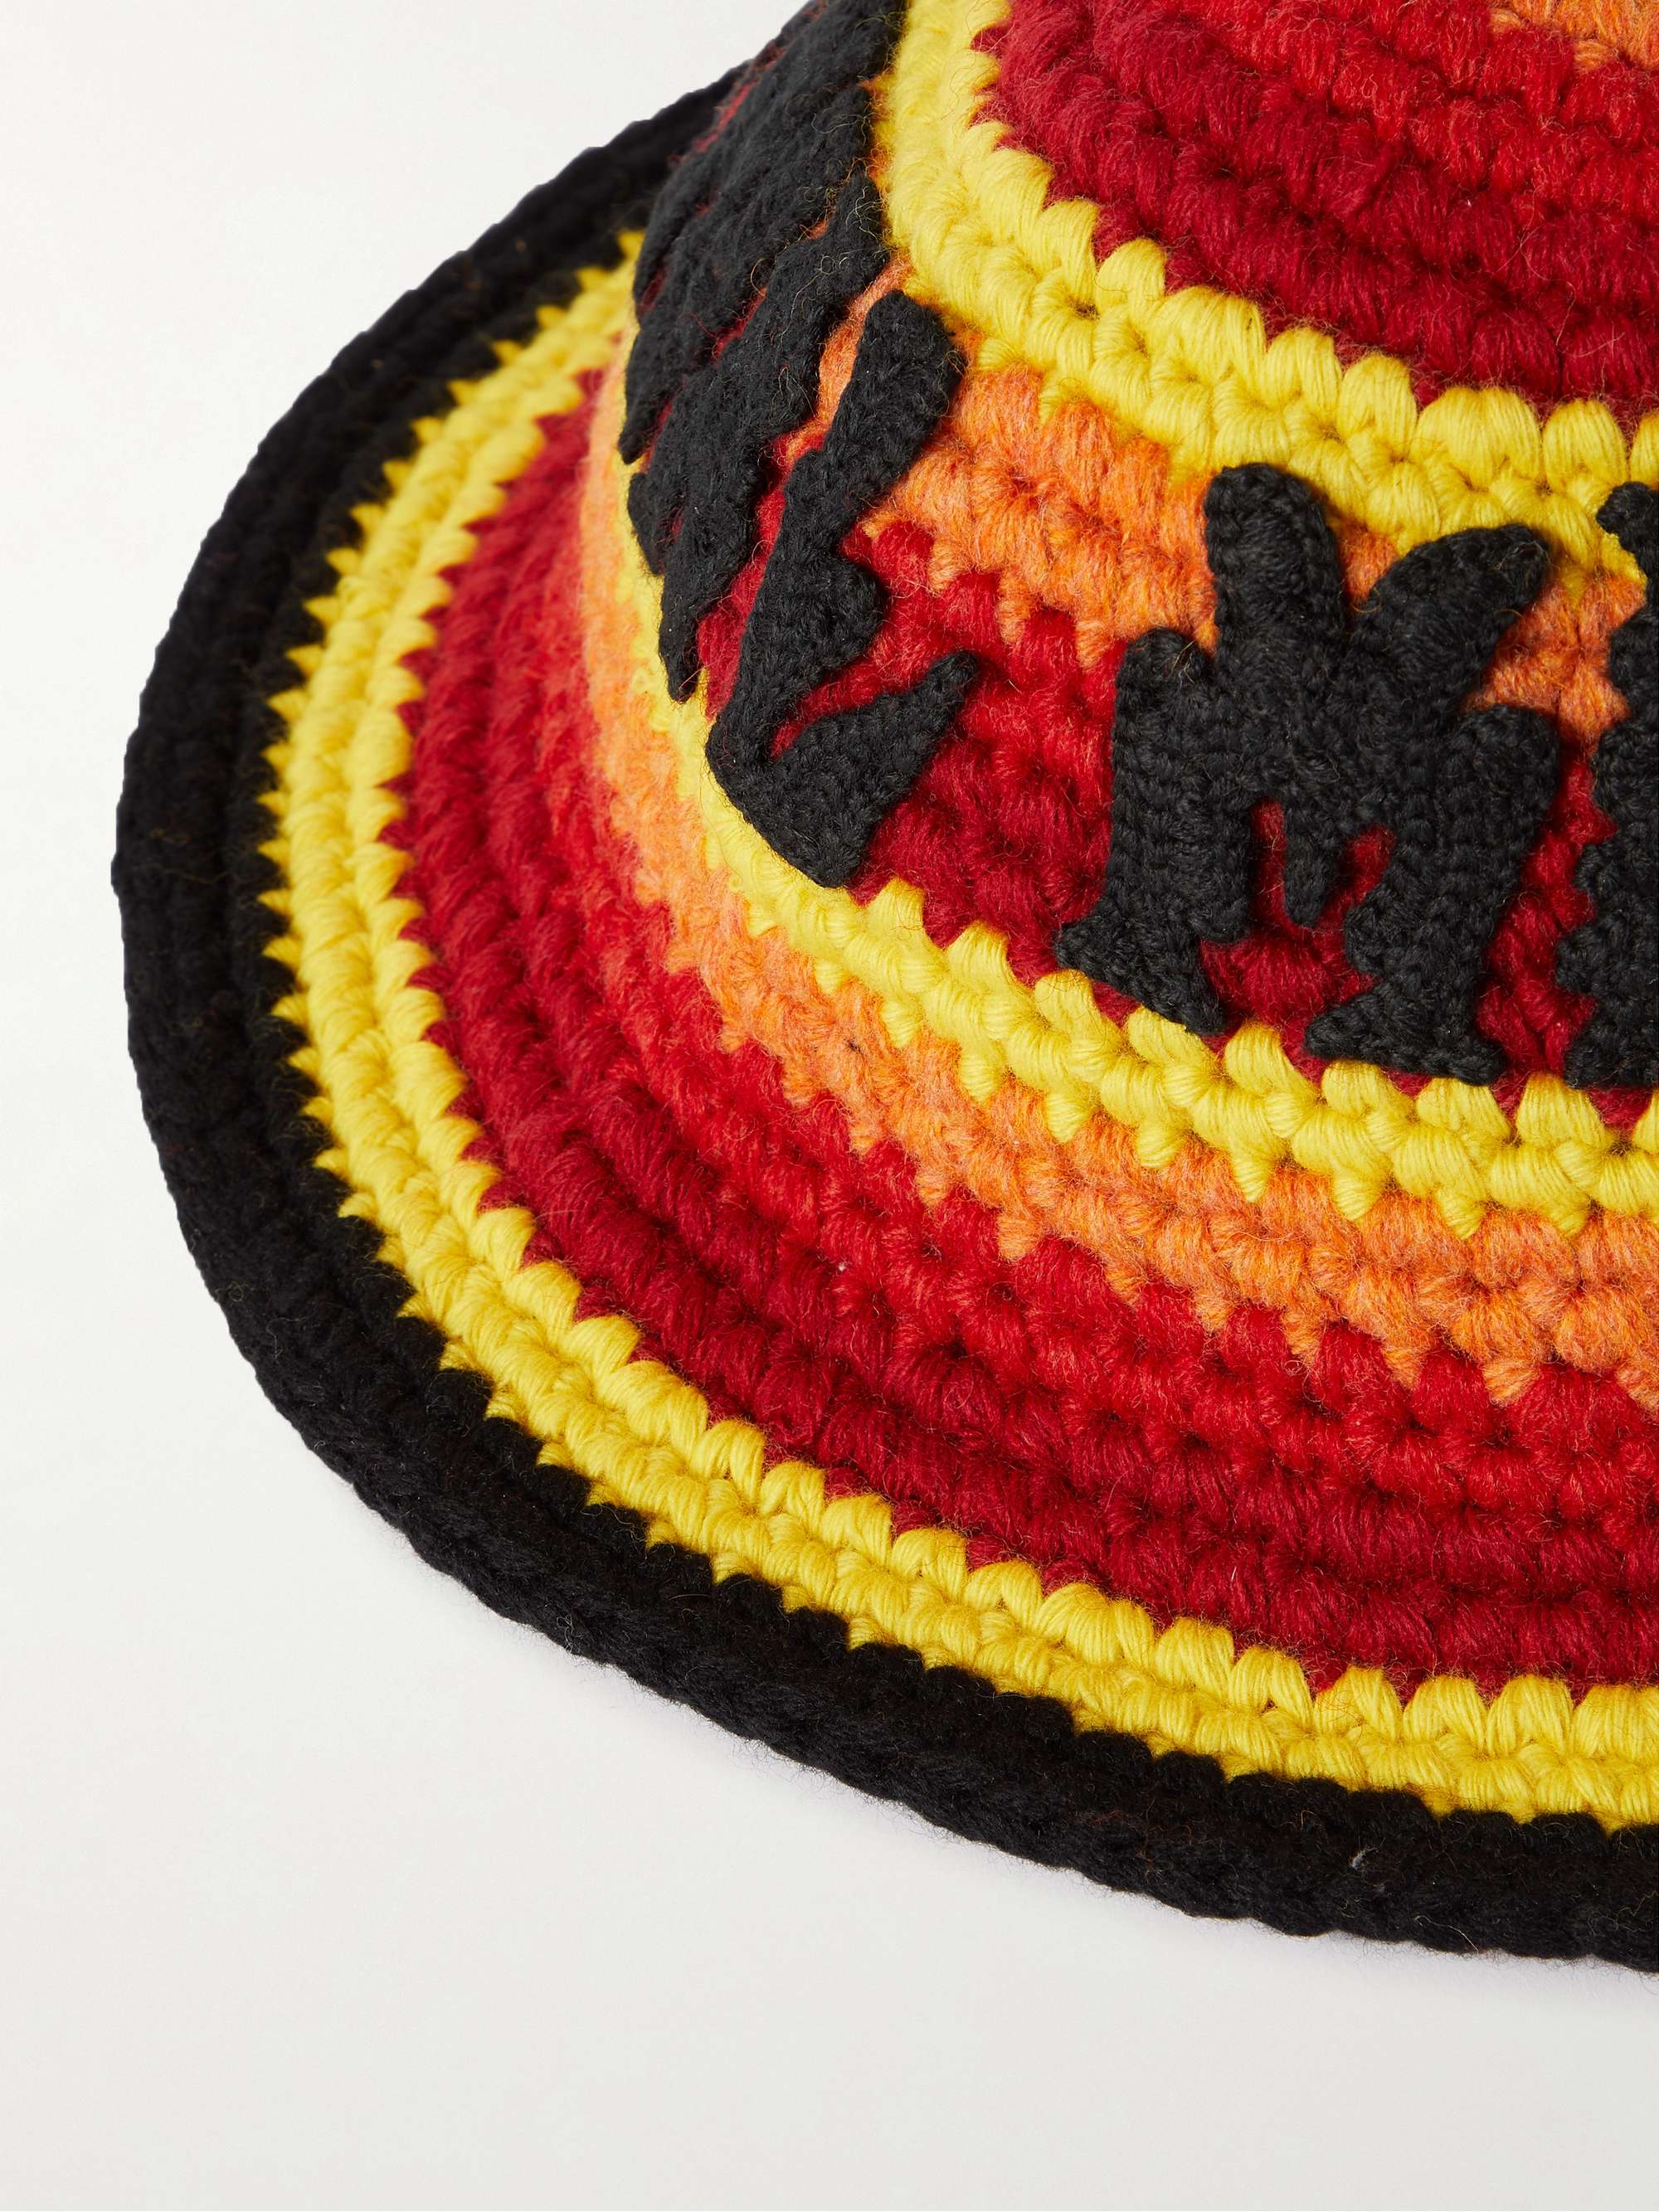 CELINE HOMME Appliquéd Striped Crochet-Knit Wool Hat